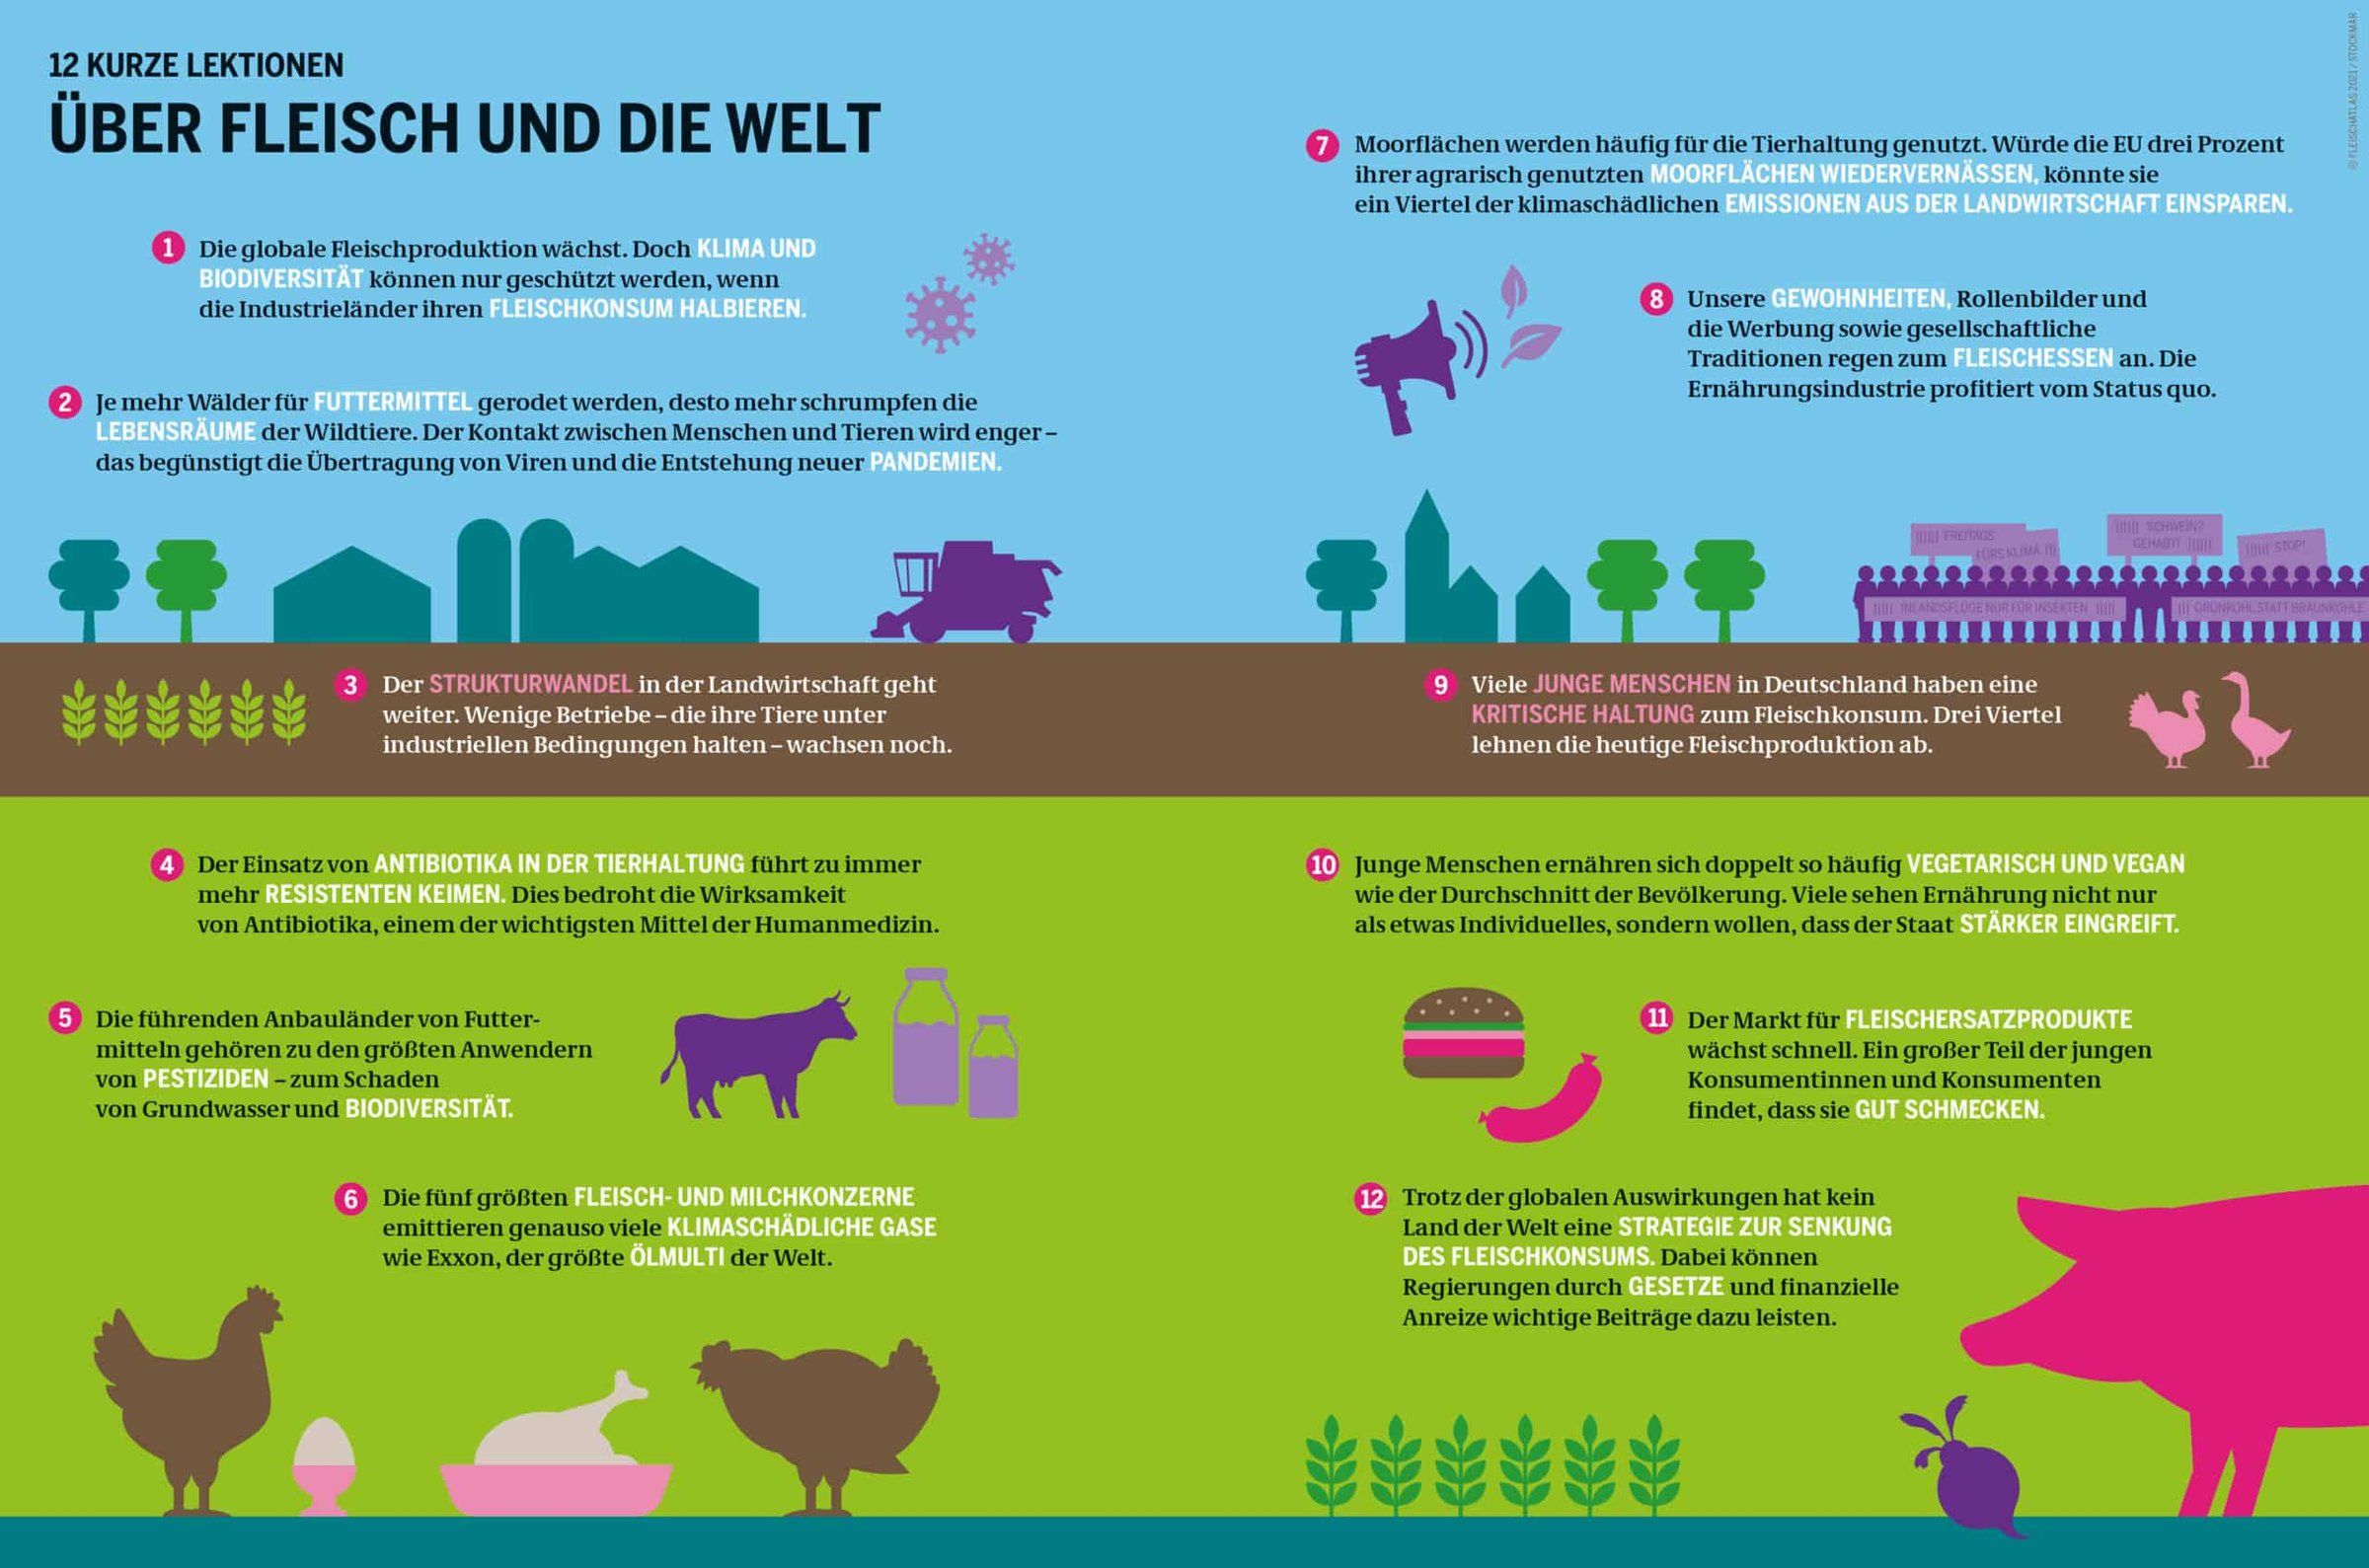 12 kurze Lektionen über Fleisch und die Welt Grafik: Fleischatlas 2021 | Bartz/Stockmar CC-BY-4.0